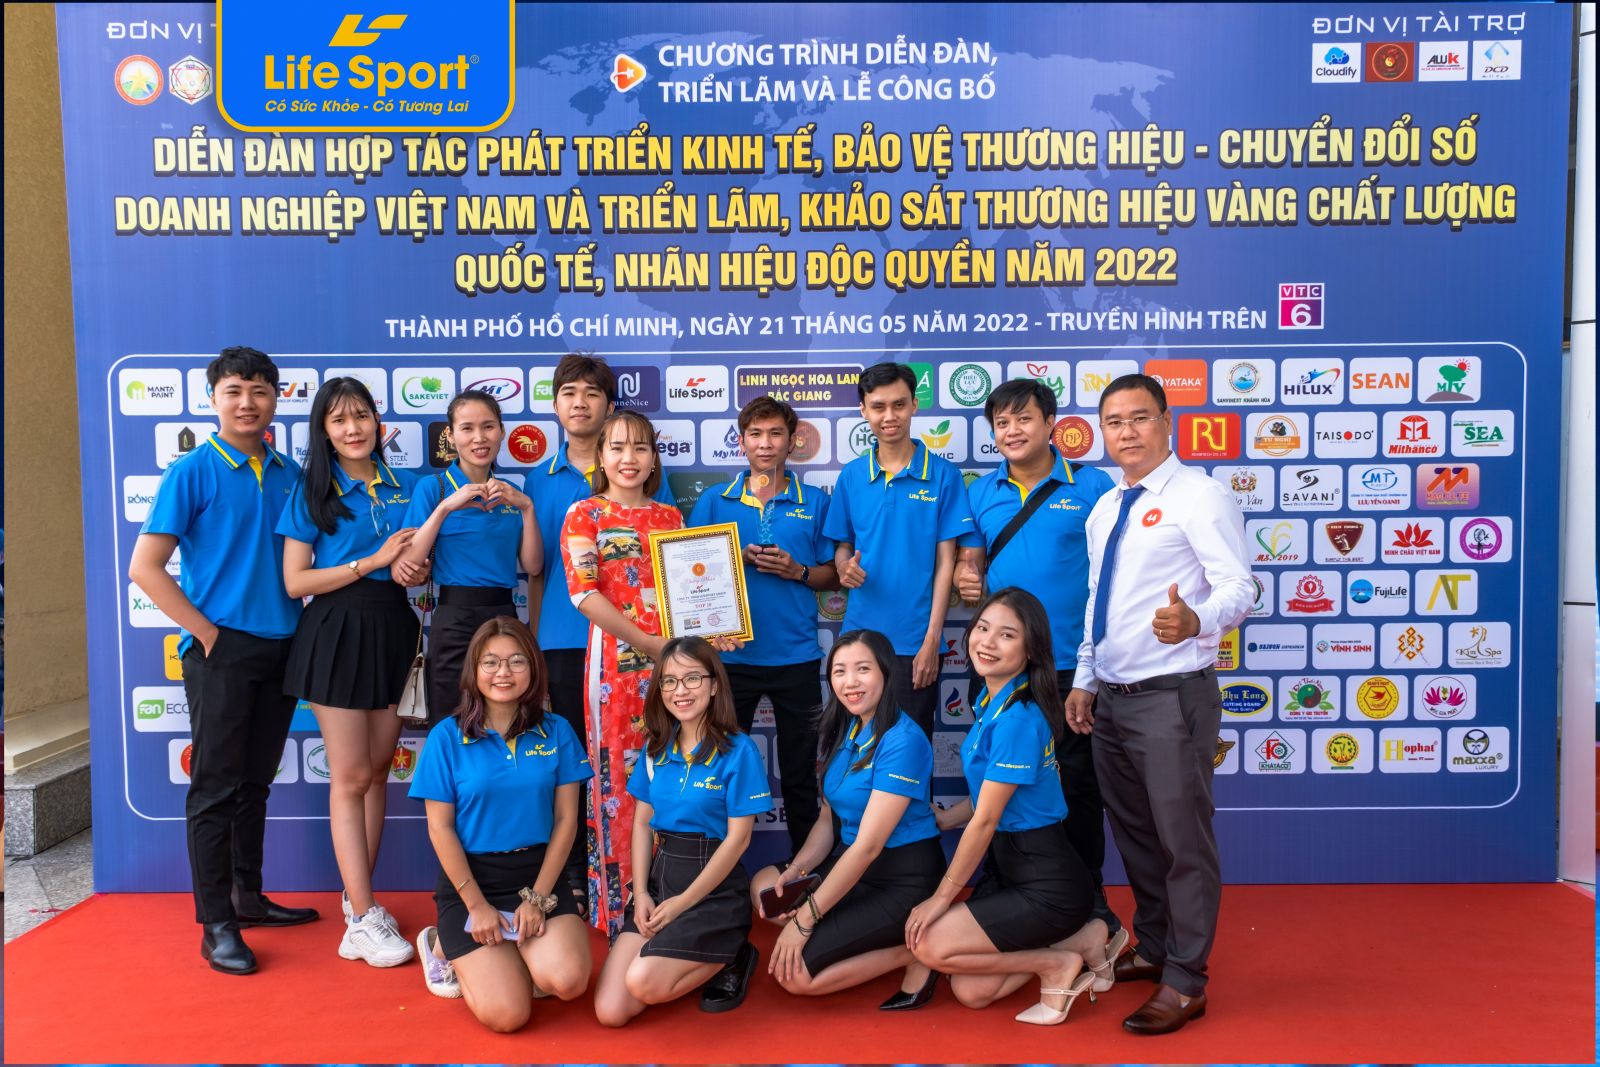 lifesport top 10 nhan hieu doc quyen 2022 2